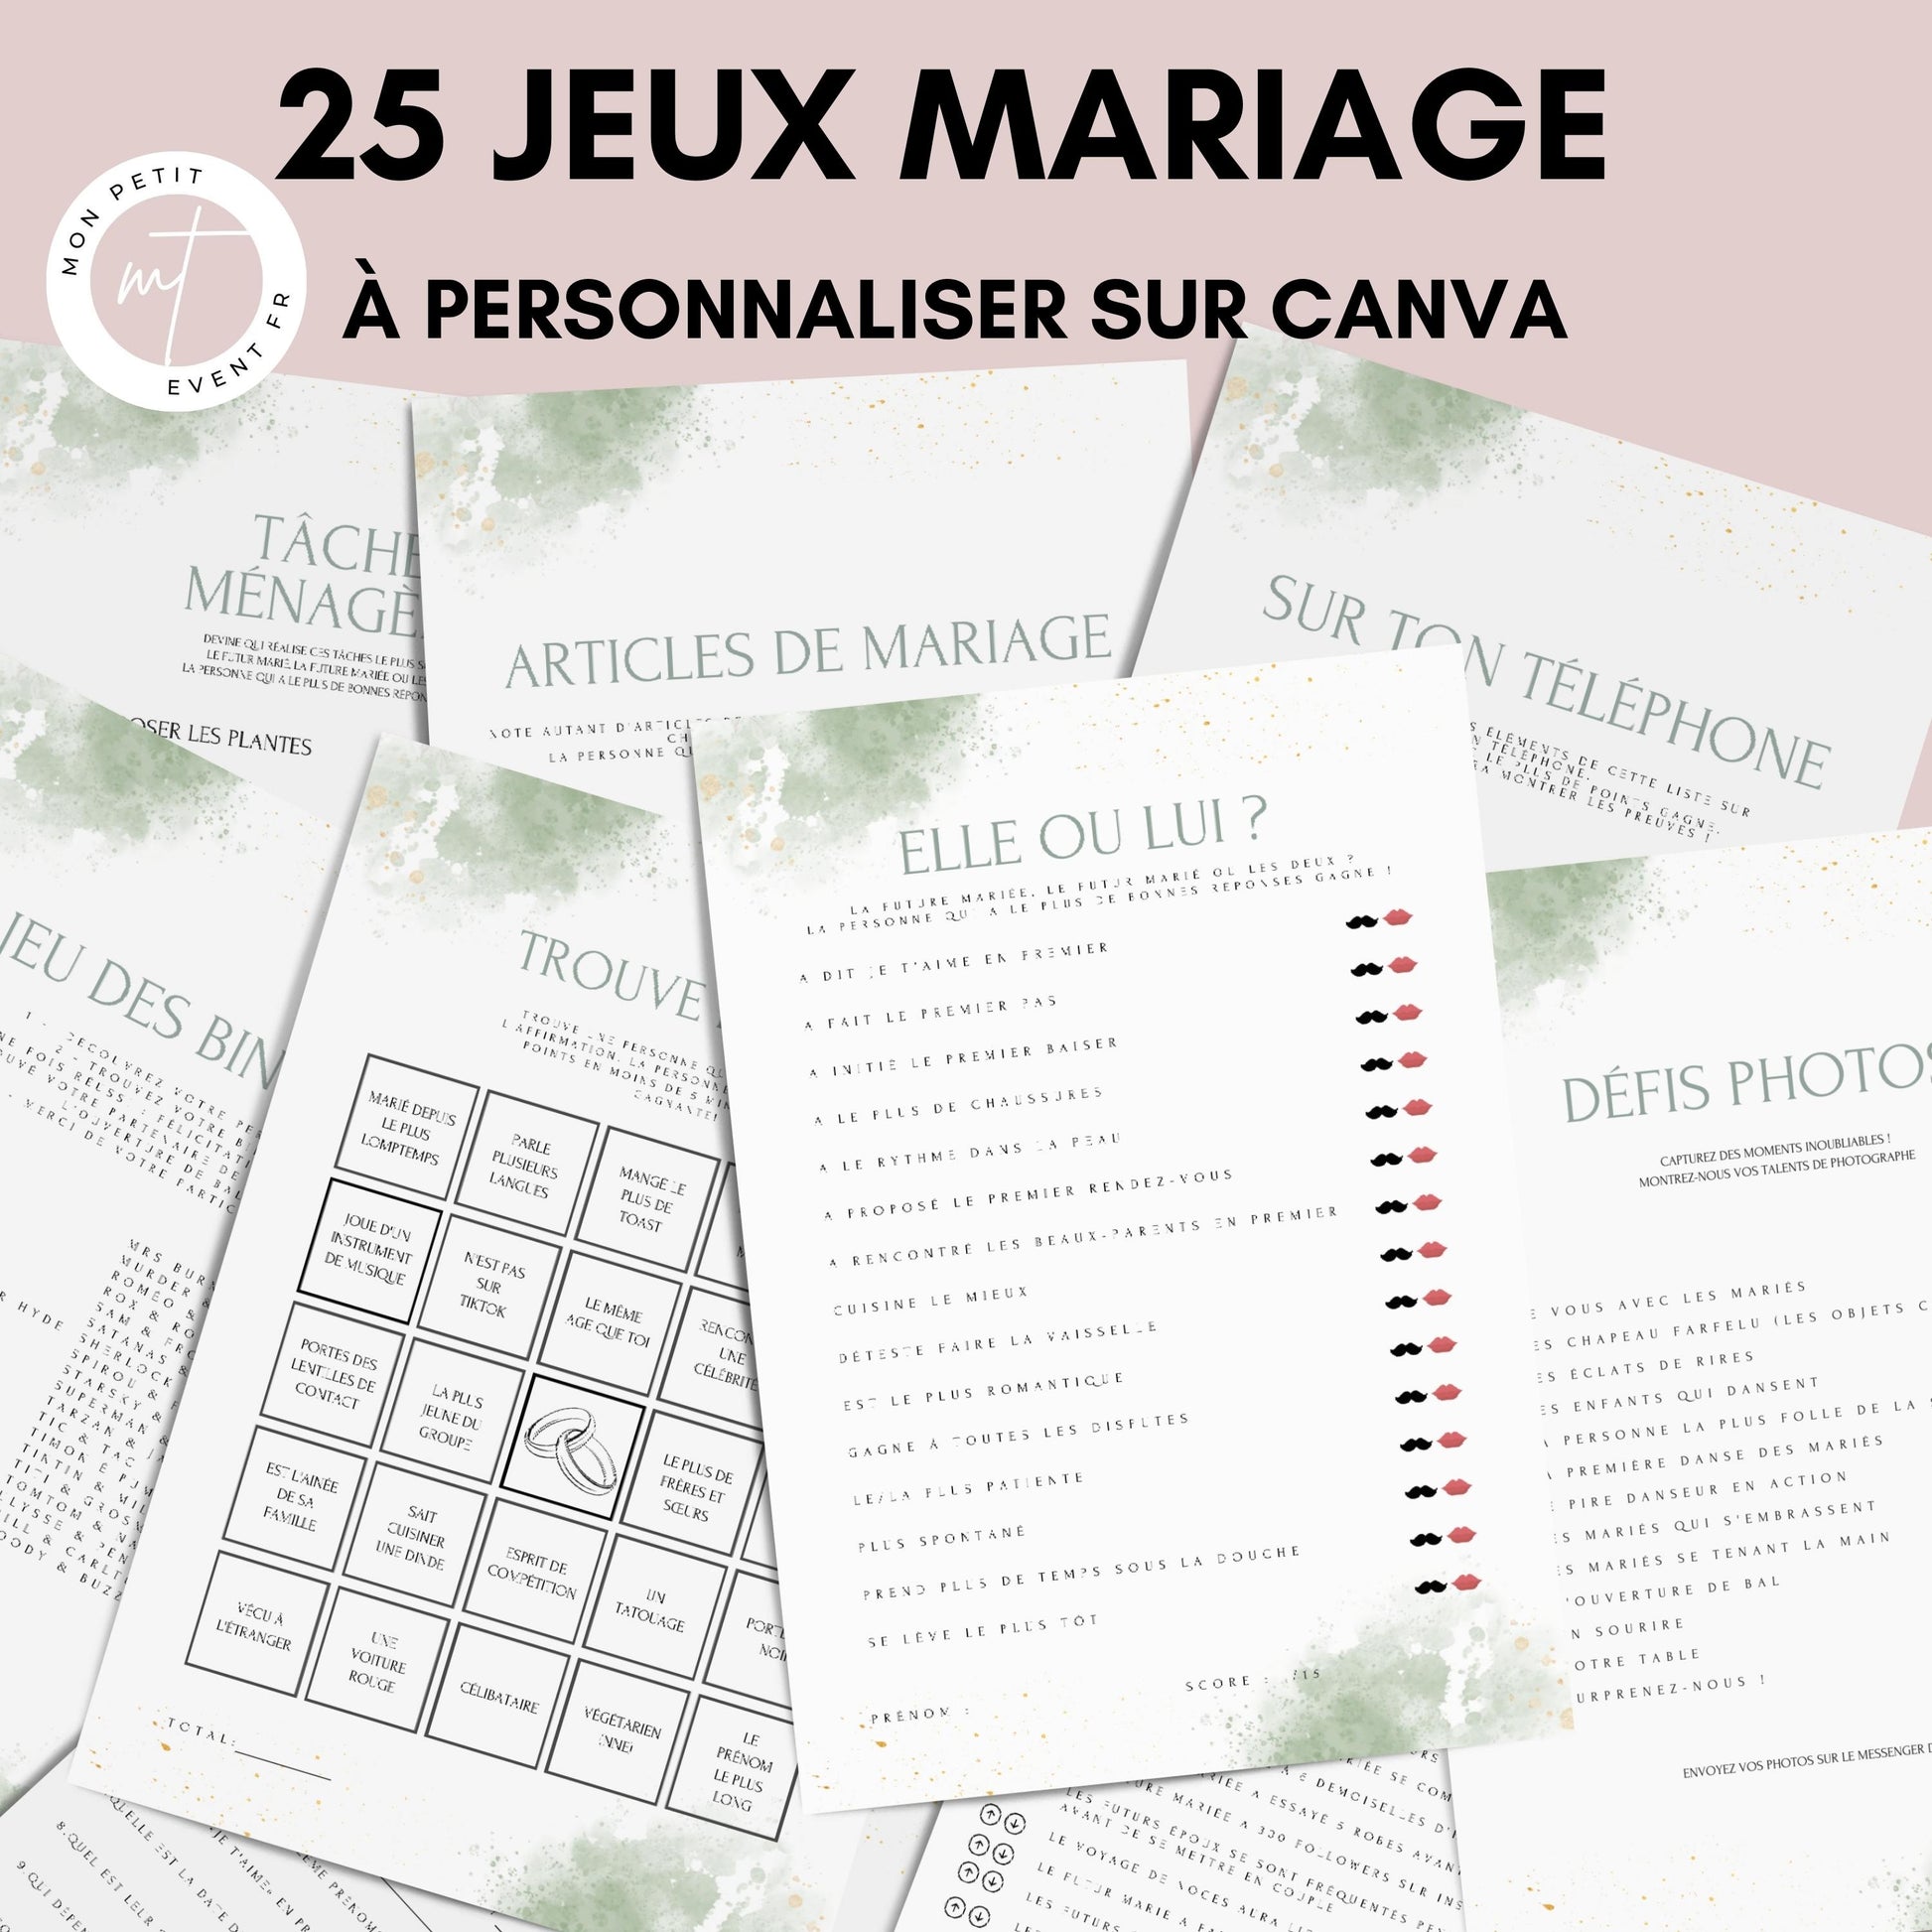 Jeu Mariage Jeu du Couple Parfait Animation de mariage à imprimez vous-même  -  France